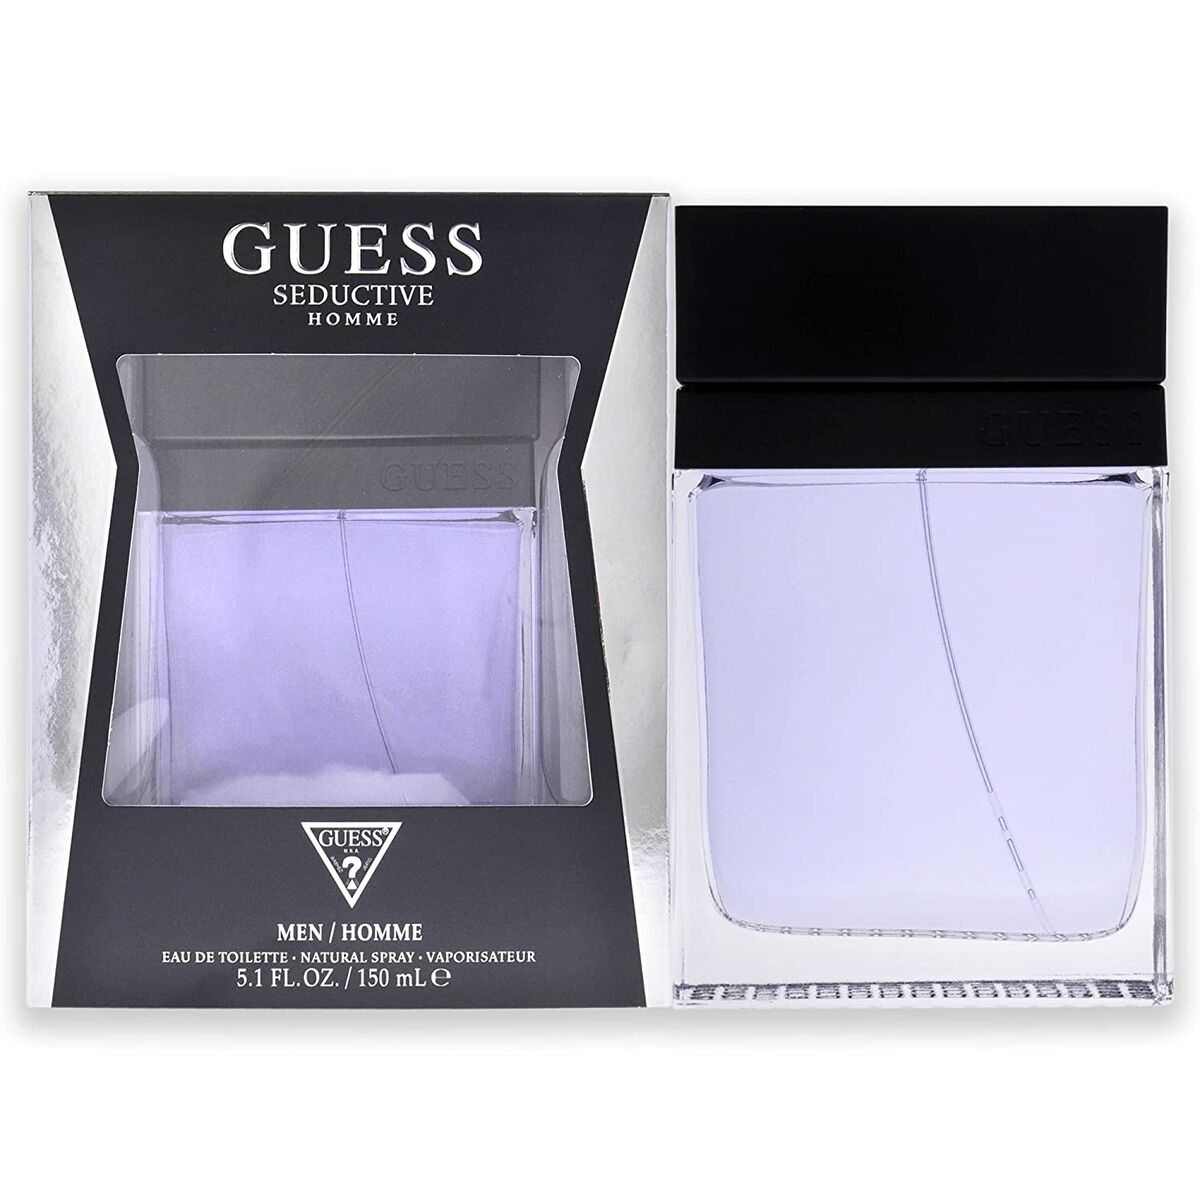 Men's Perfume Guess EDT Seductive Homme (150 ml)-0